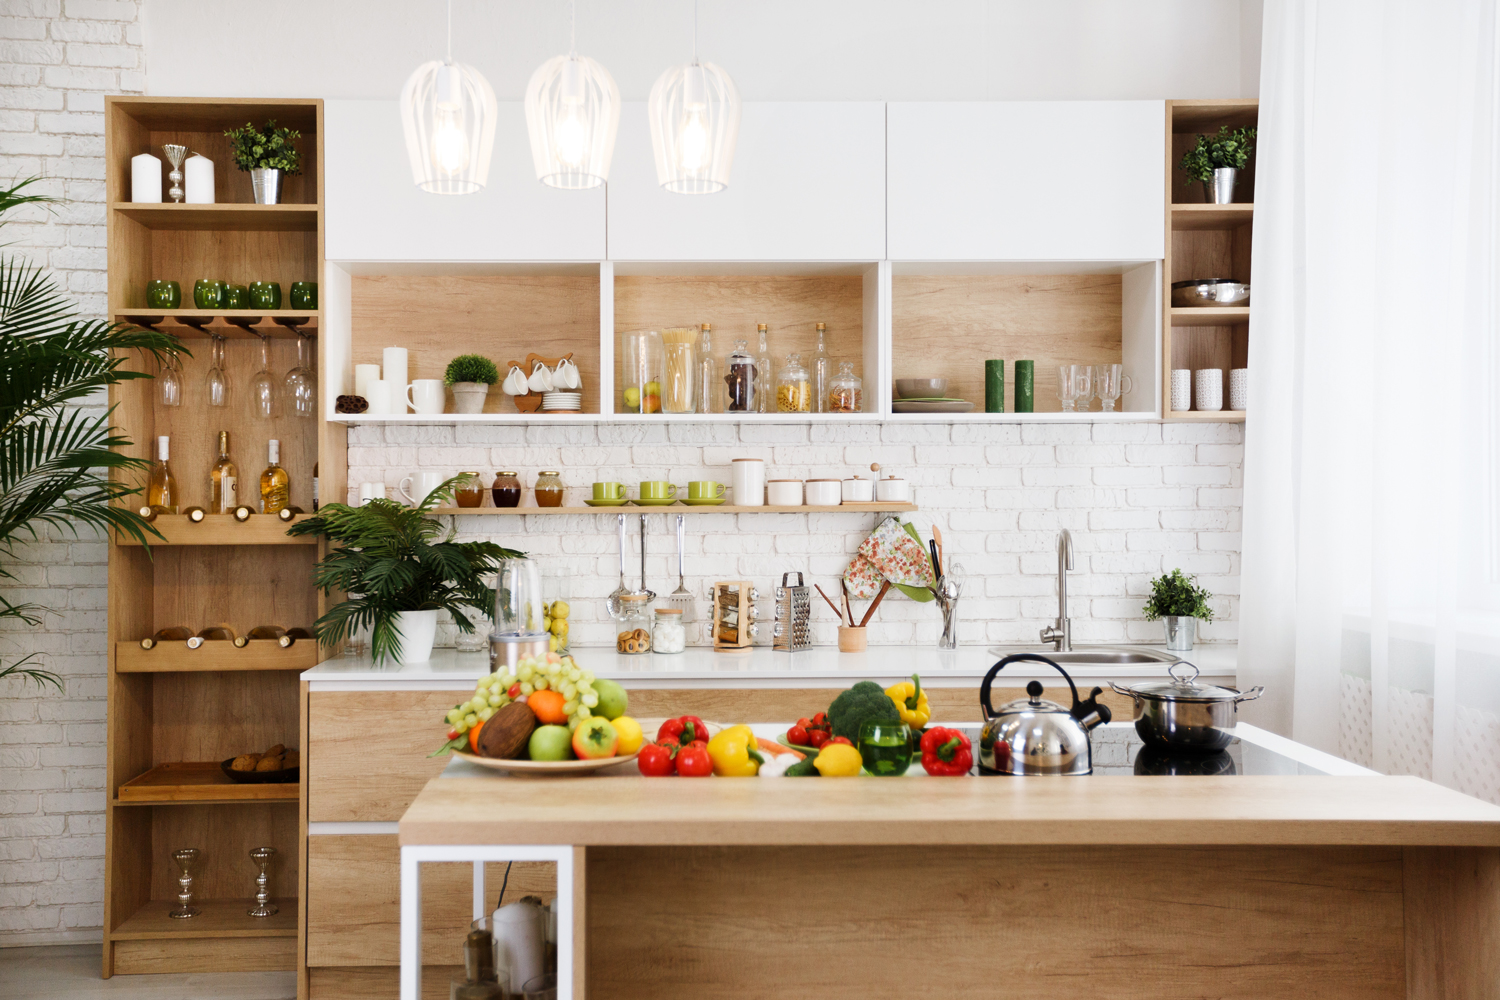 Modern Kitchen Design Ideas   Kitchen Cabinet Design   Open ...